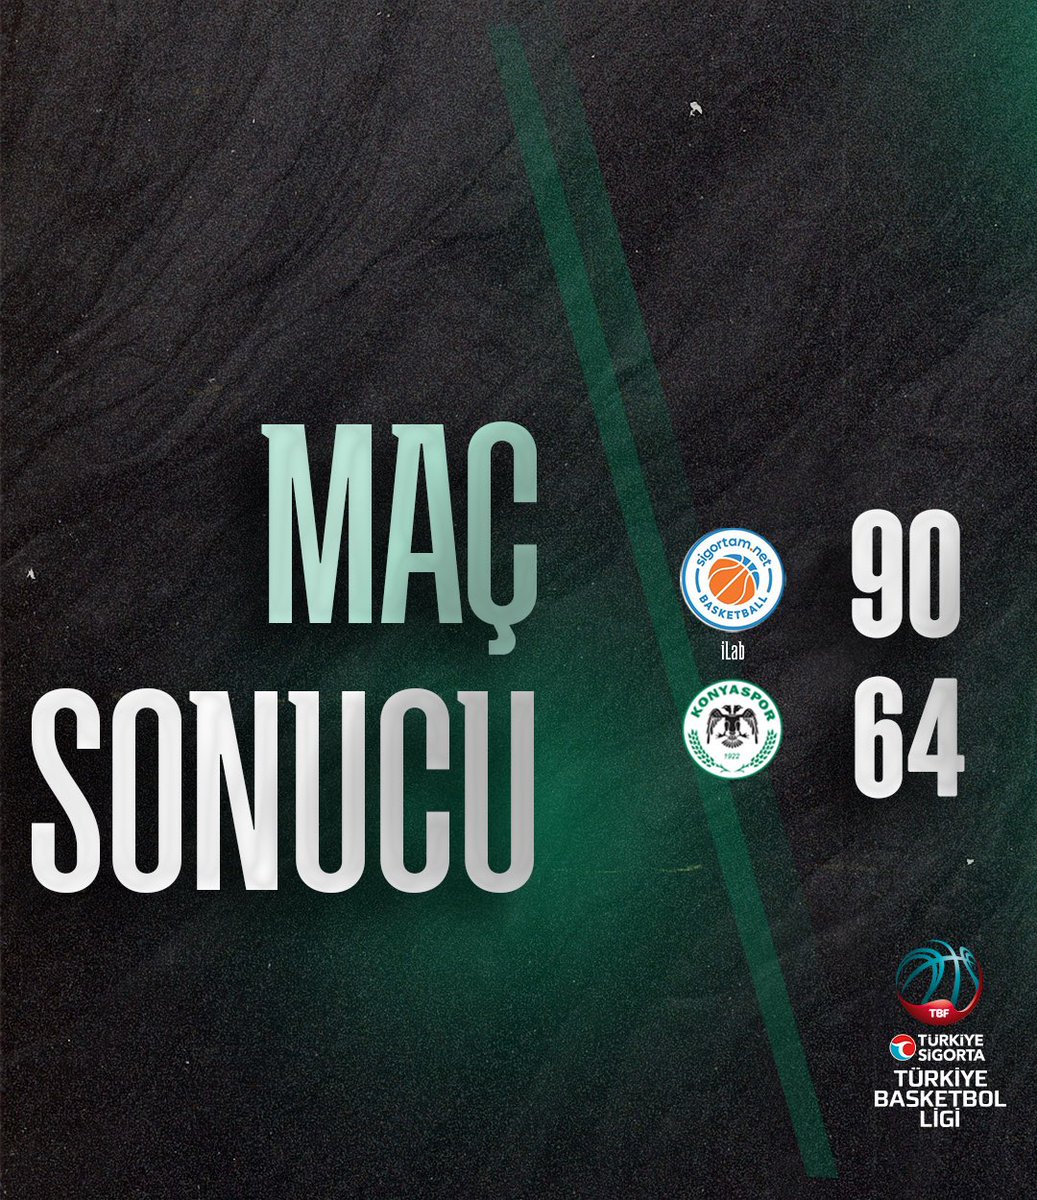 Türkiye Sigorta #TBL l 31. Hafta 🟢⚪️ Maç sonucu: Sigortam Net 90-64 Konyaspor